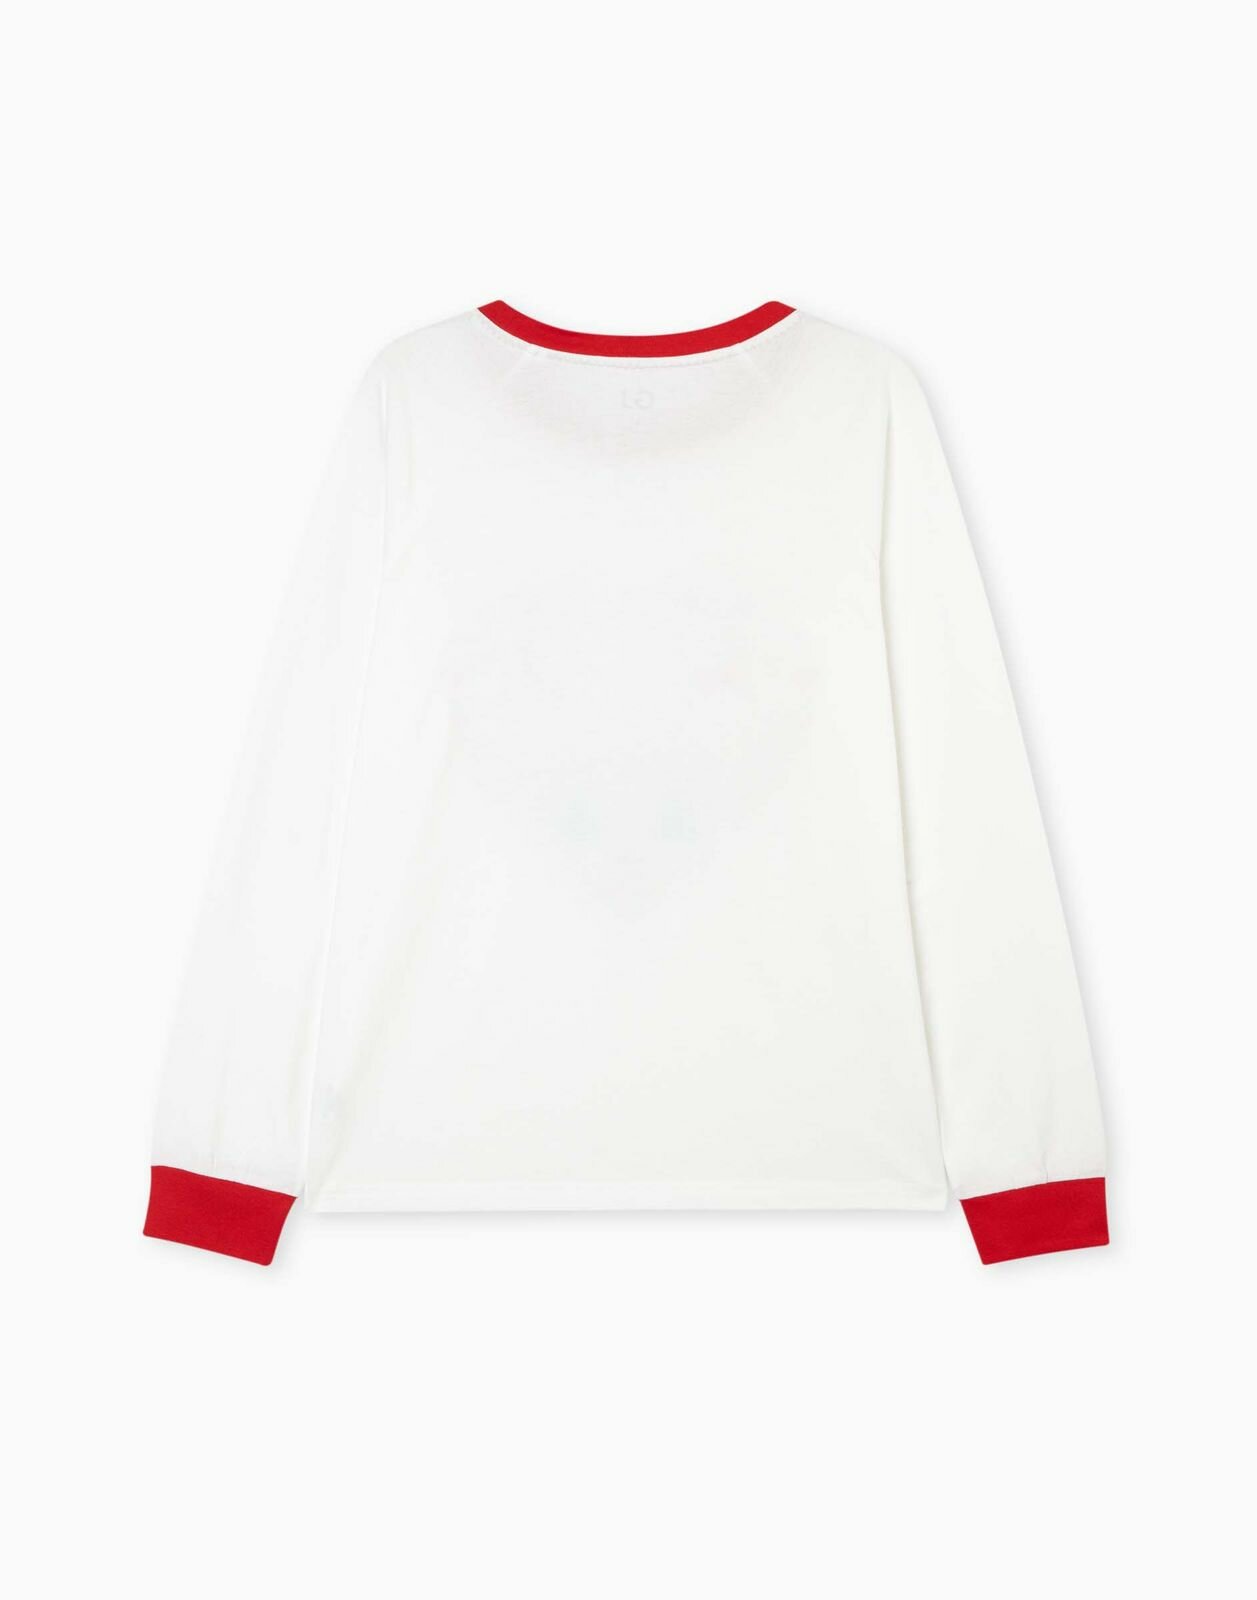 Пижамная футболка Gloria Jeans GSL001672 молочный женский L (46) - фотография № 2